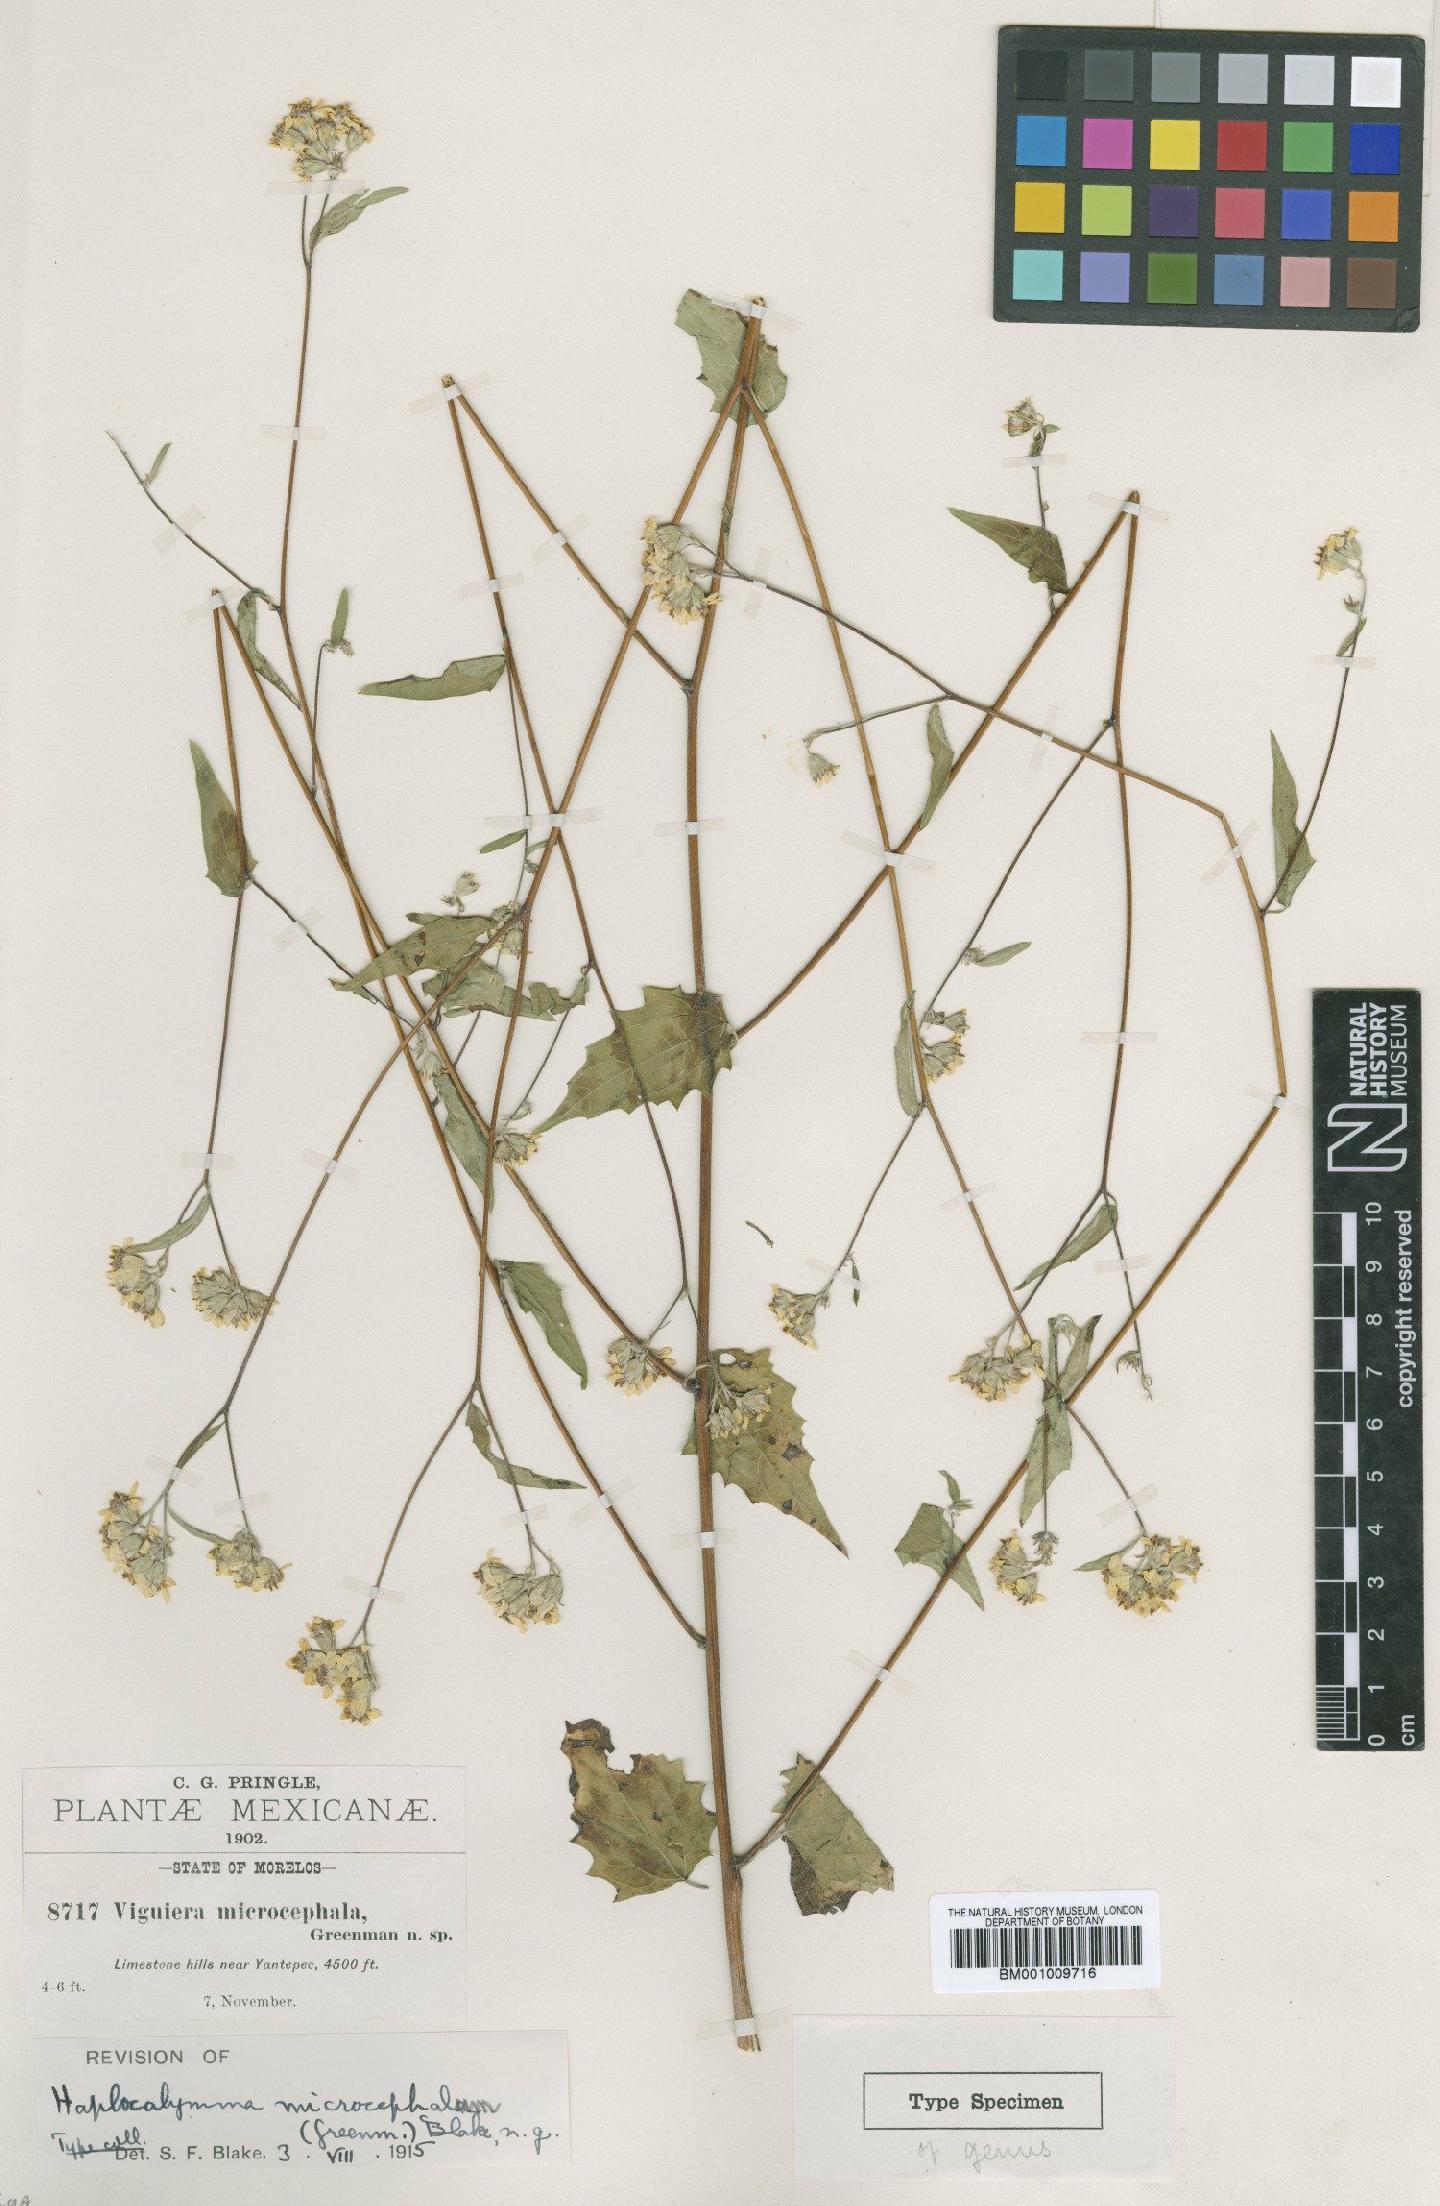 To NHMUK collection (Viguiera microcephala Greenm.; Type; NHMUK:ecatalogue:620462)